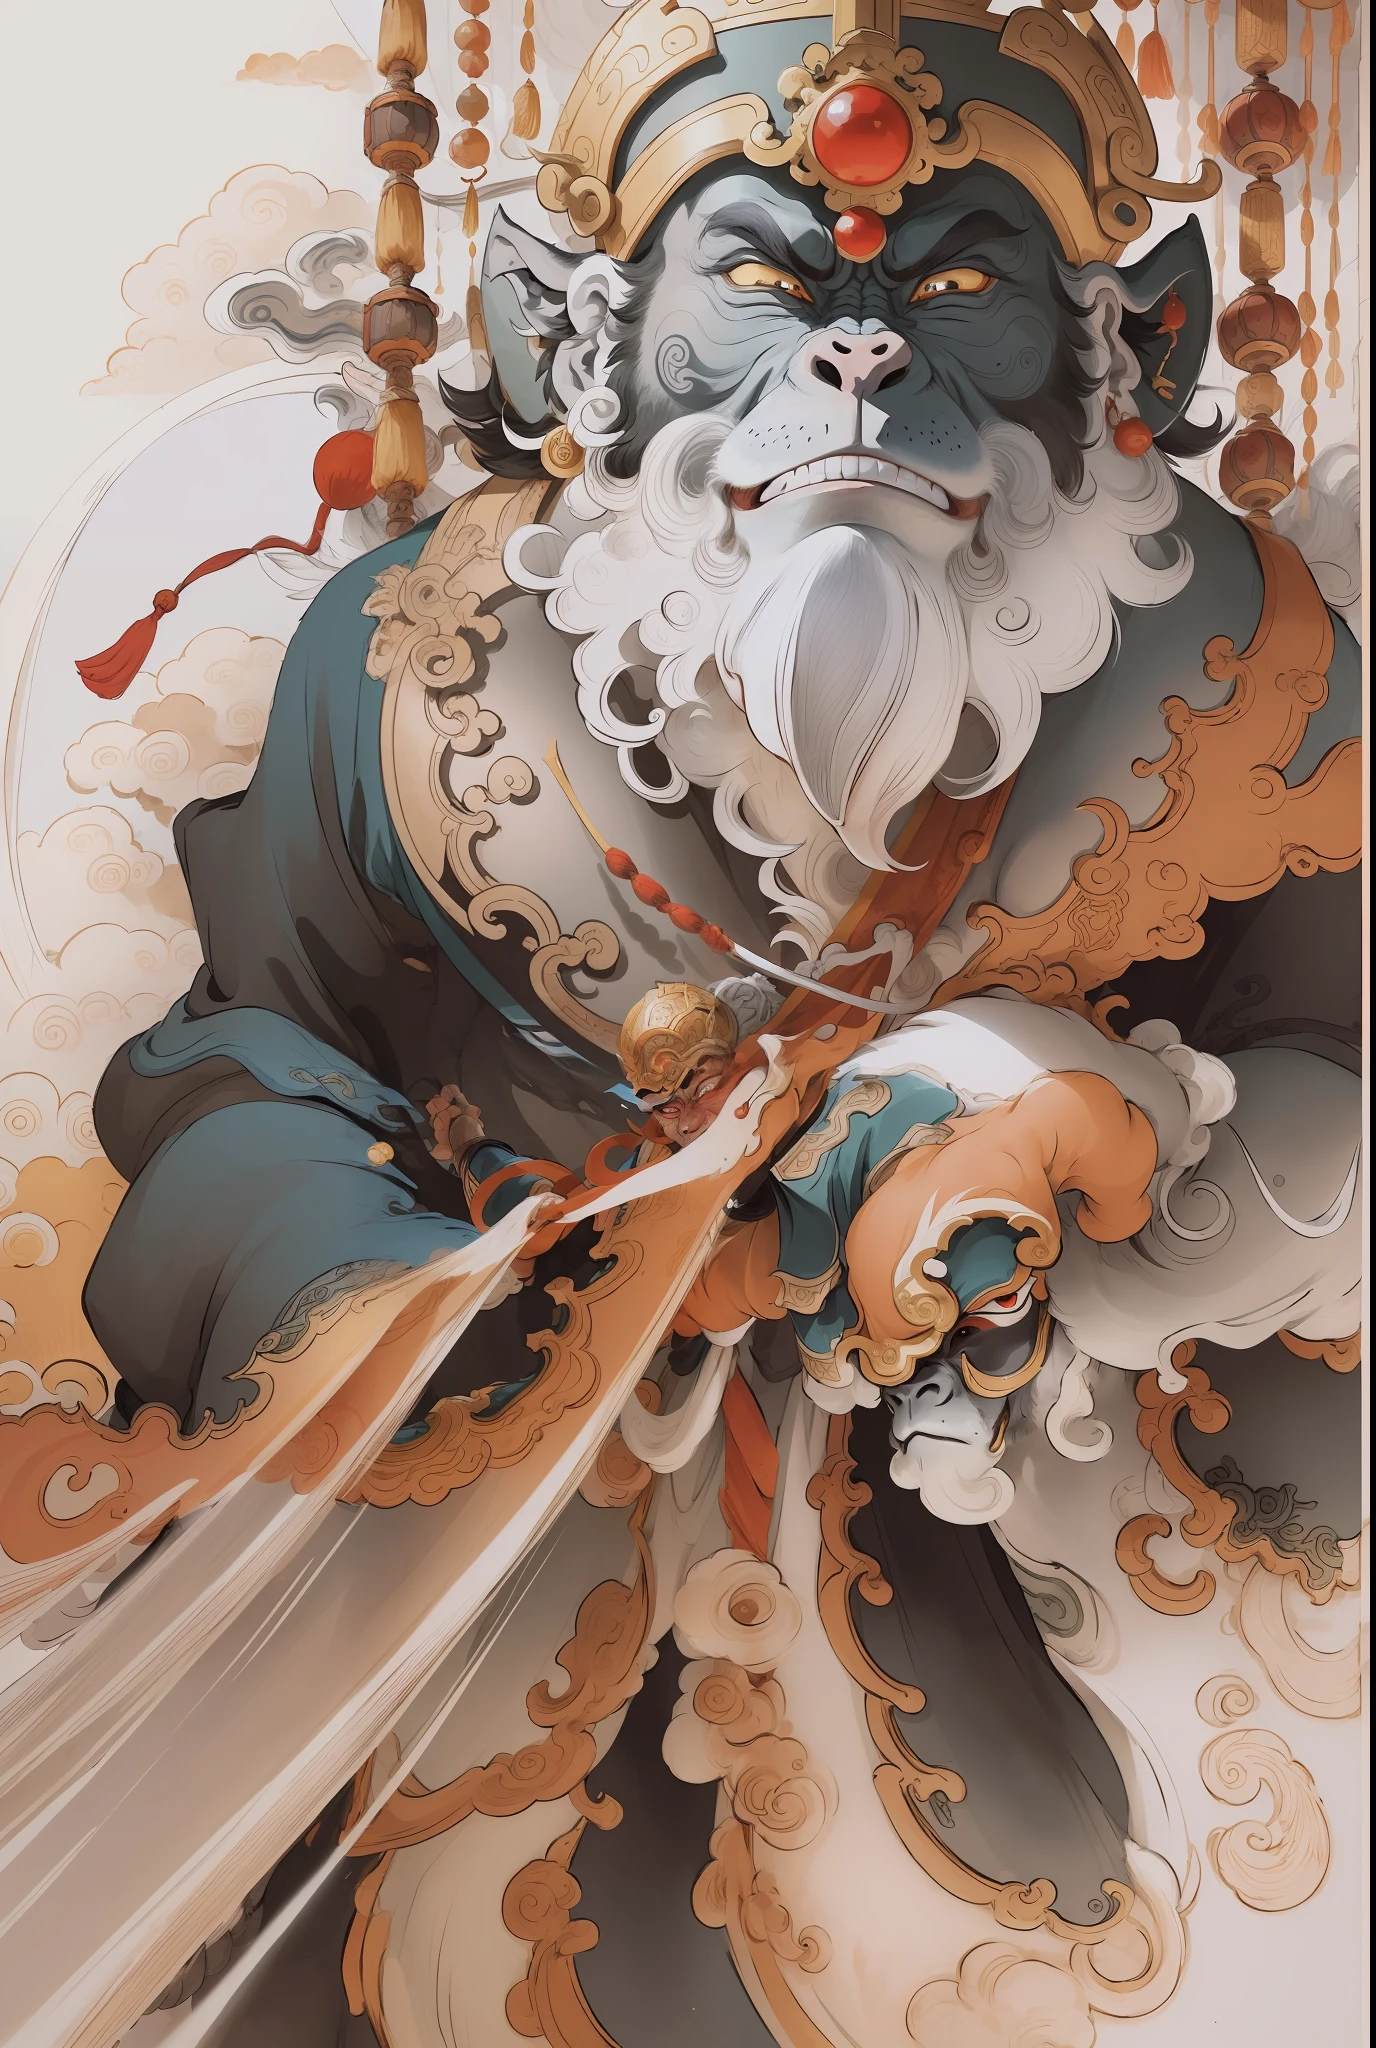 un rey mono, Qi Tian Daisheng Tiangong (de Viaje al Oeste), Estilo de pintura con tinta, colores limpios, Recortes decisivos, espacio en blanco, a mano, Obra maestra, súper detallado, Composición épica, alta calidad, de la máxima calidad, estilo pixar, sobresaturado, surreal, germen artístico --v 6